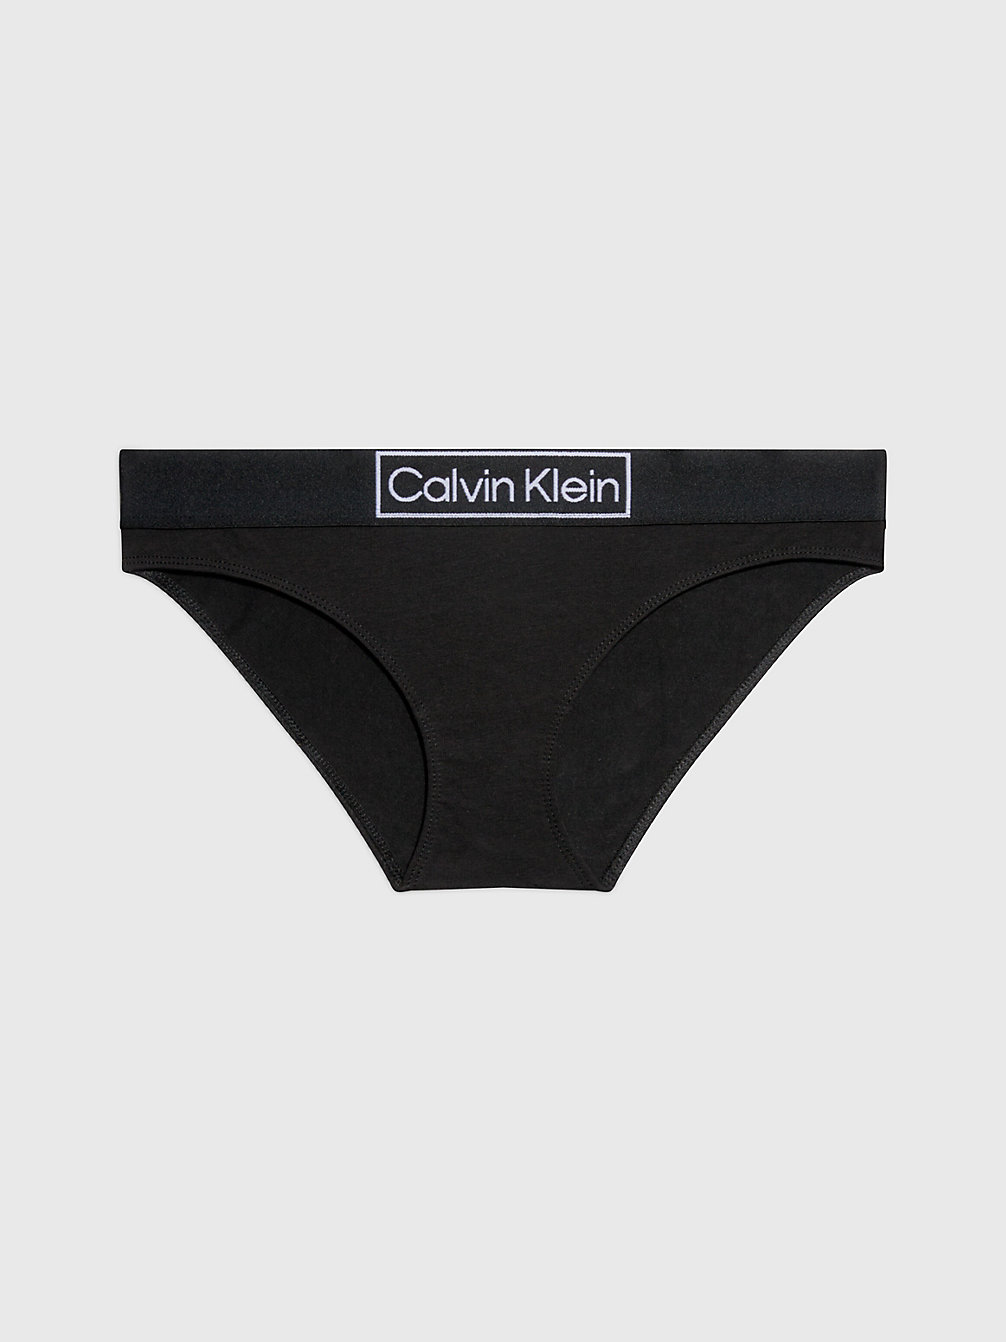 BLACK > Figi - Reimagined Heritage > undefined Kobiety - Calvin Klein